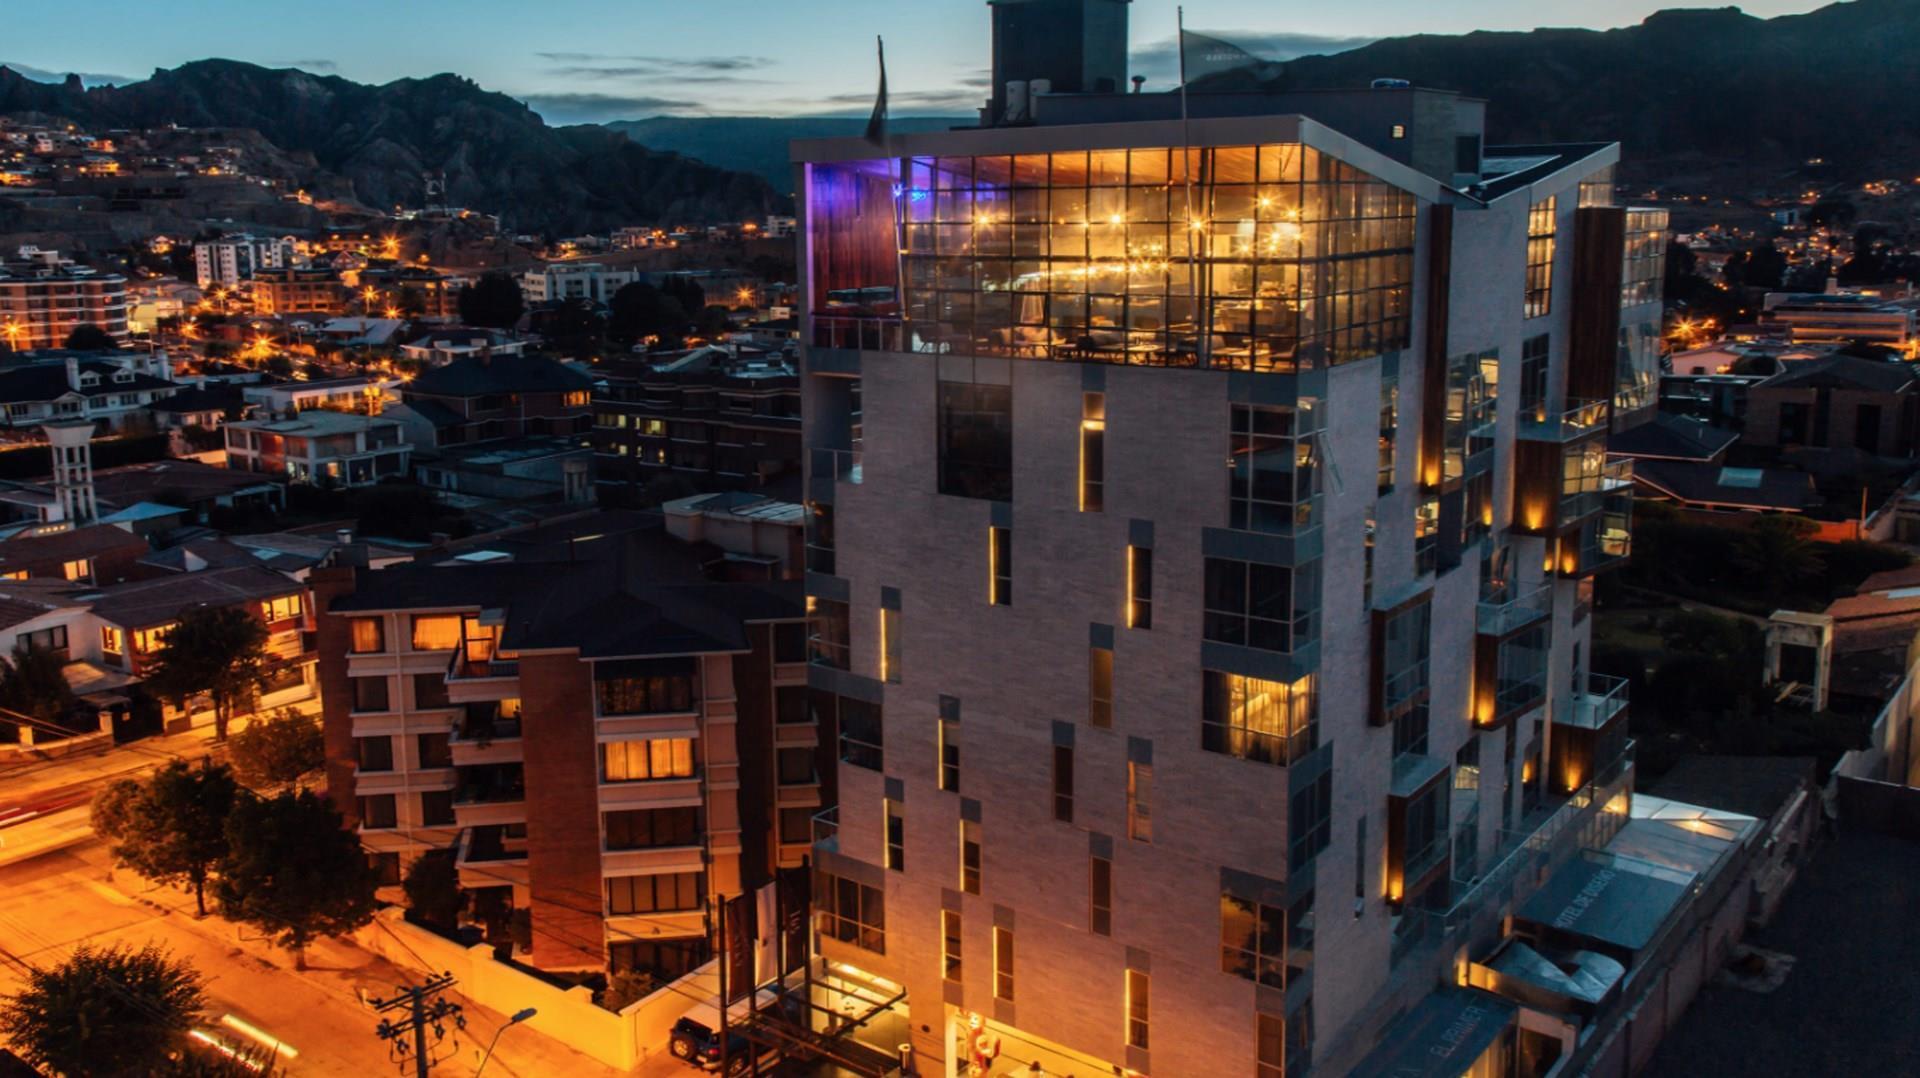 Atix Hotel in La Paz, BO